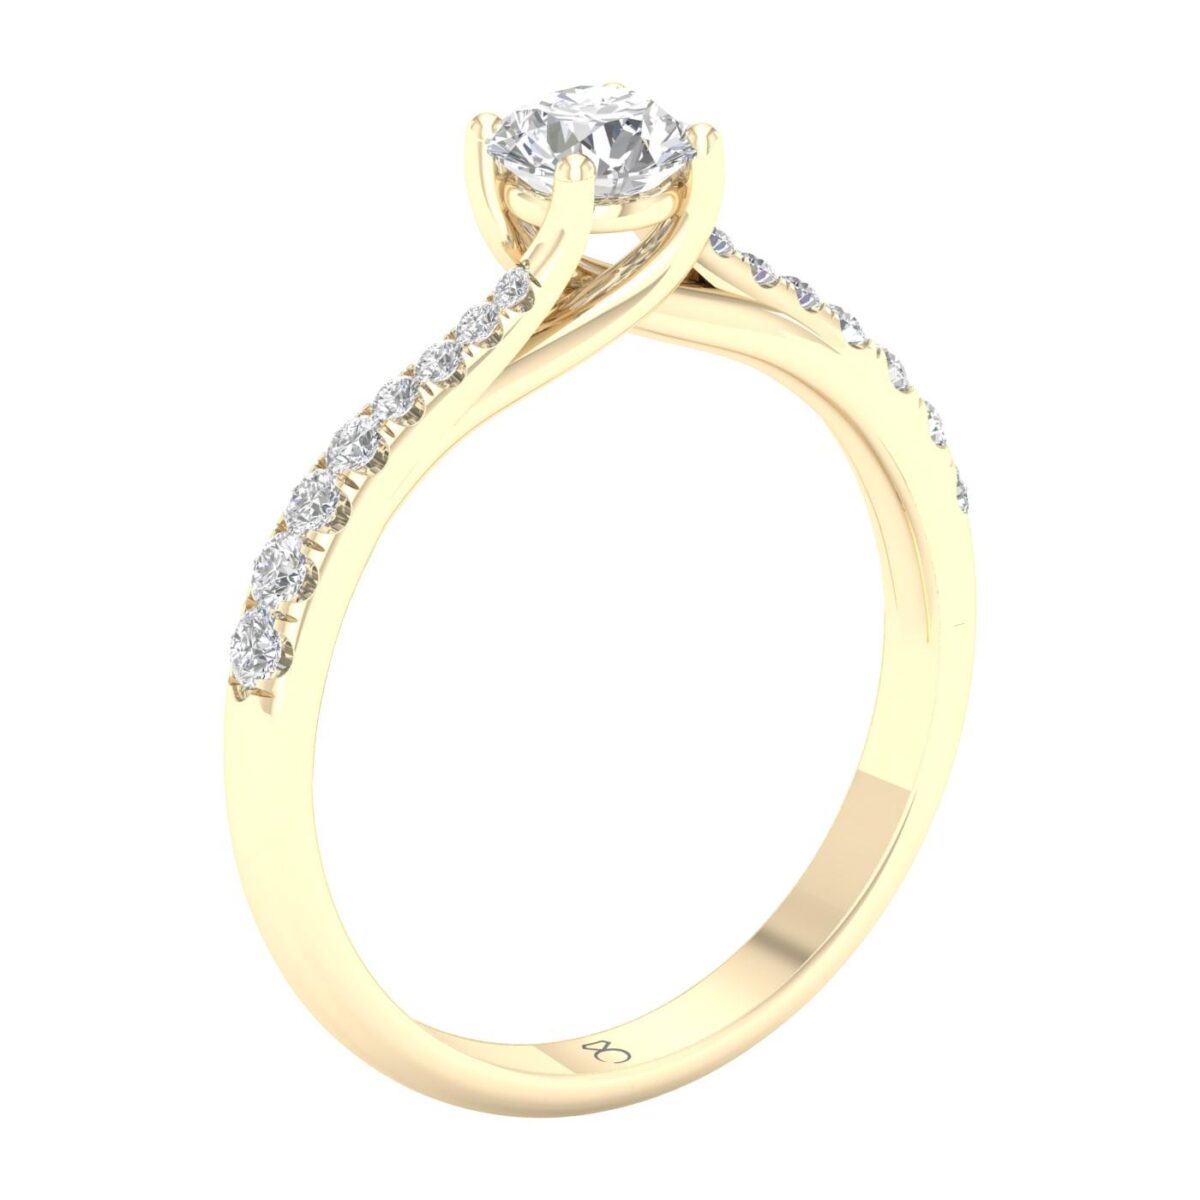 Kullast sõrmus teemantidega 0,50 ct. Kood: 46hh